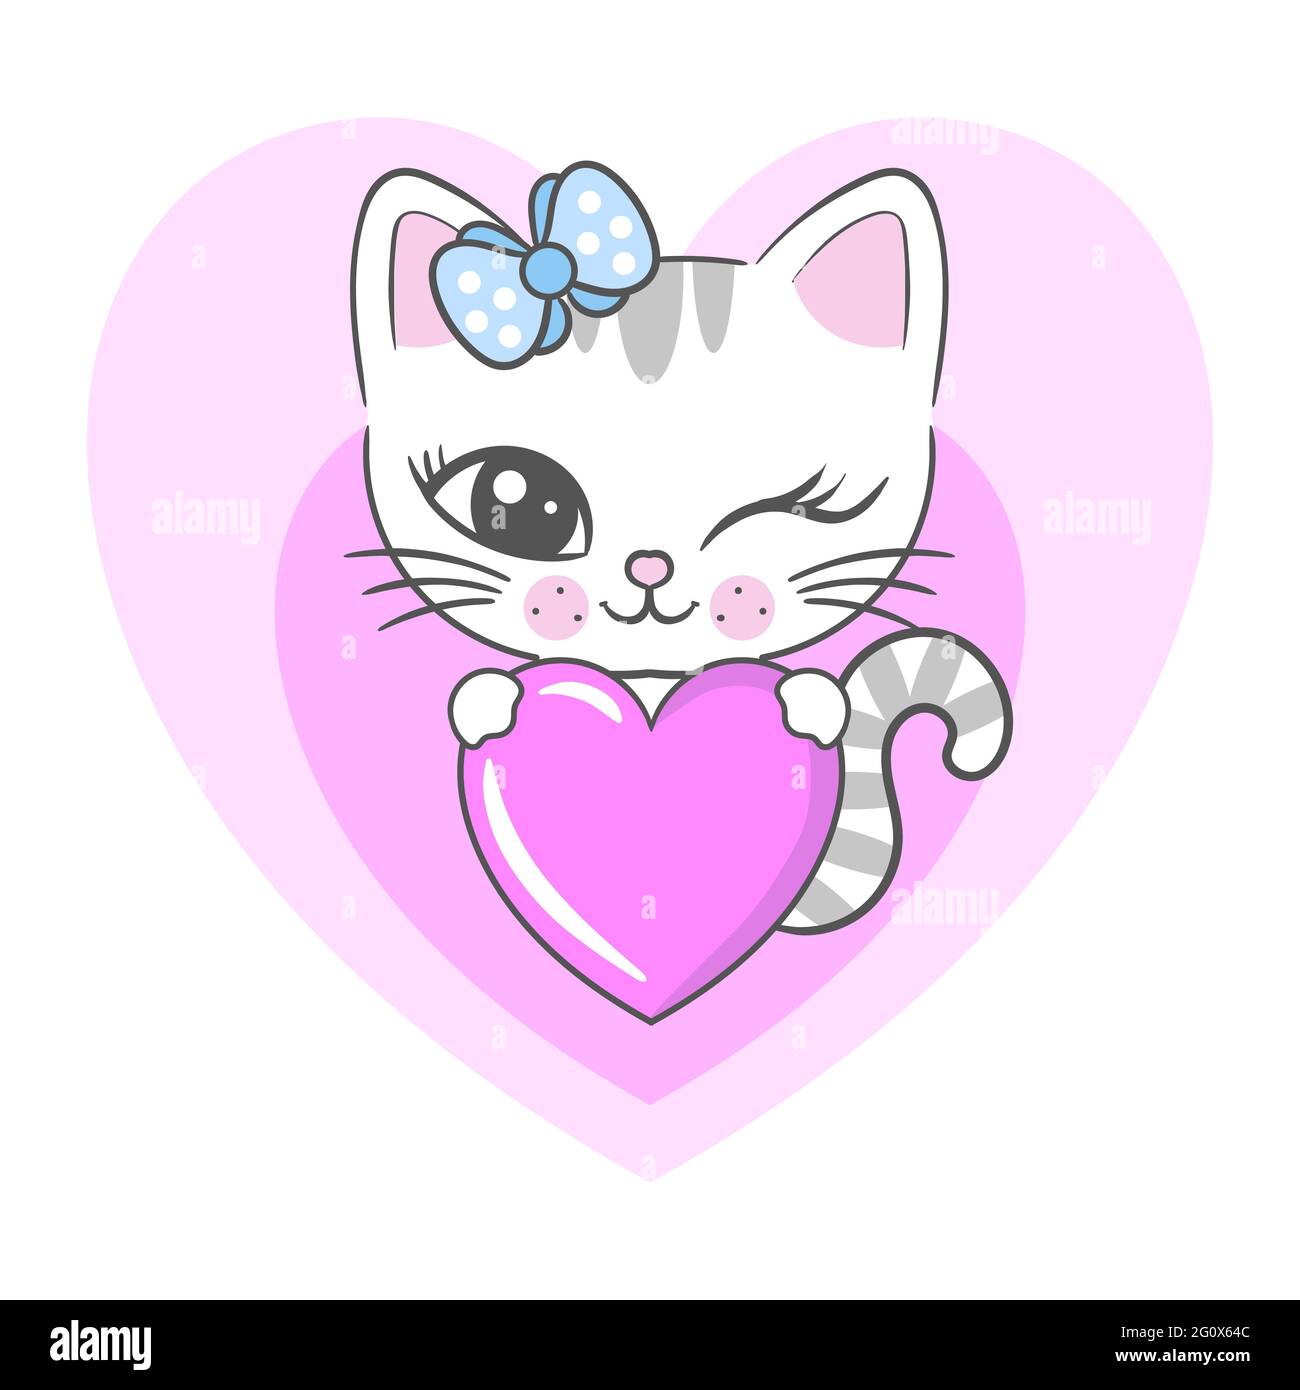 Le joli chaton tient un coeur. Illustration pour enfants. Pour la conception de tirages, affiches, cartes, invitations. Cartes, autocollants, badges, bannières. Vect Illustration de Vecteur